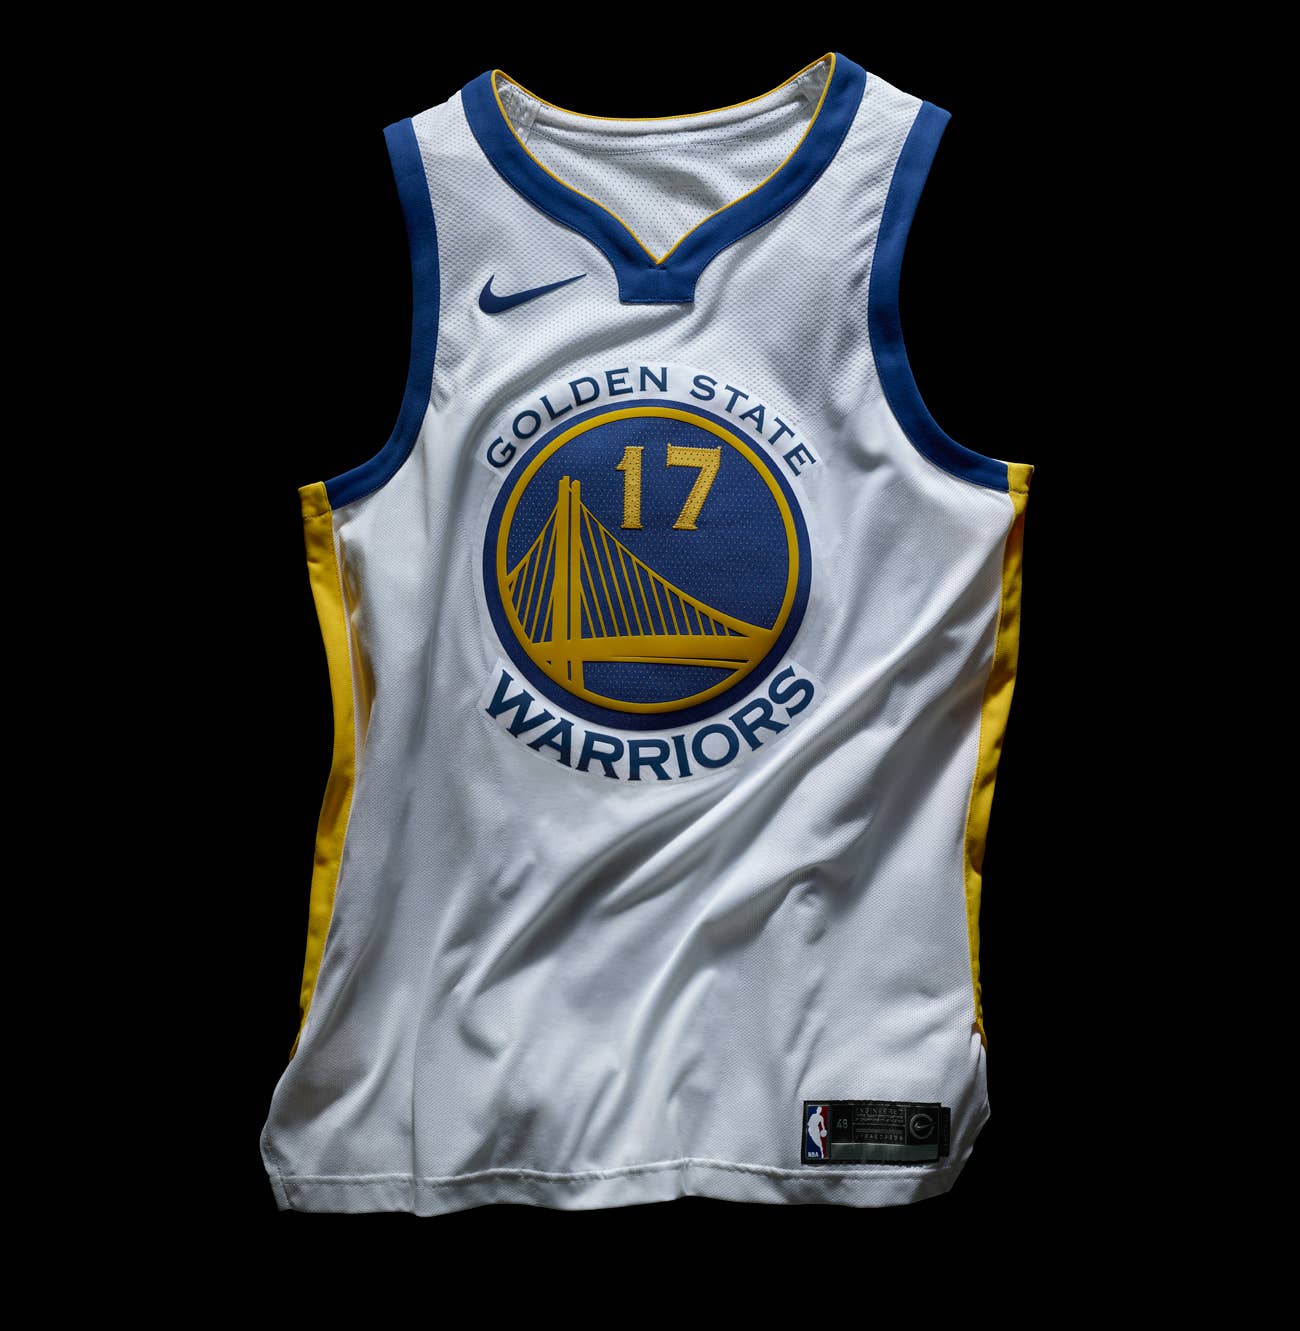 Warriors unveil new City Edition uniforms